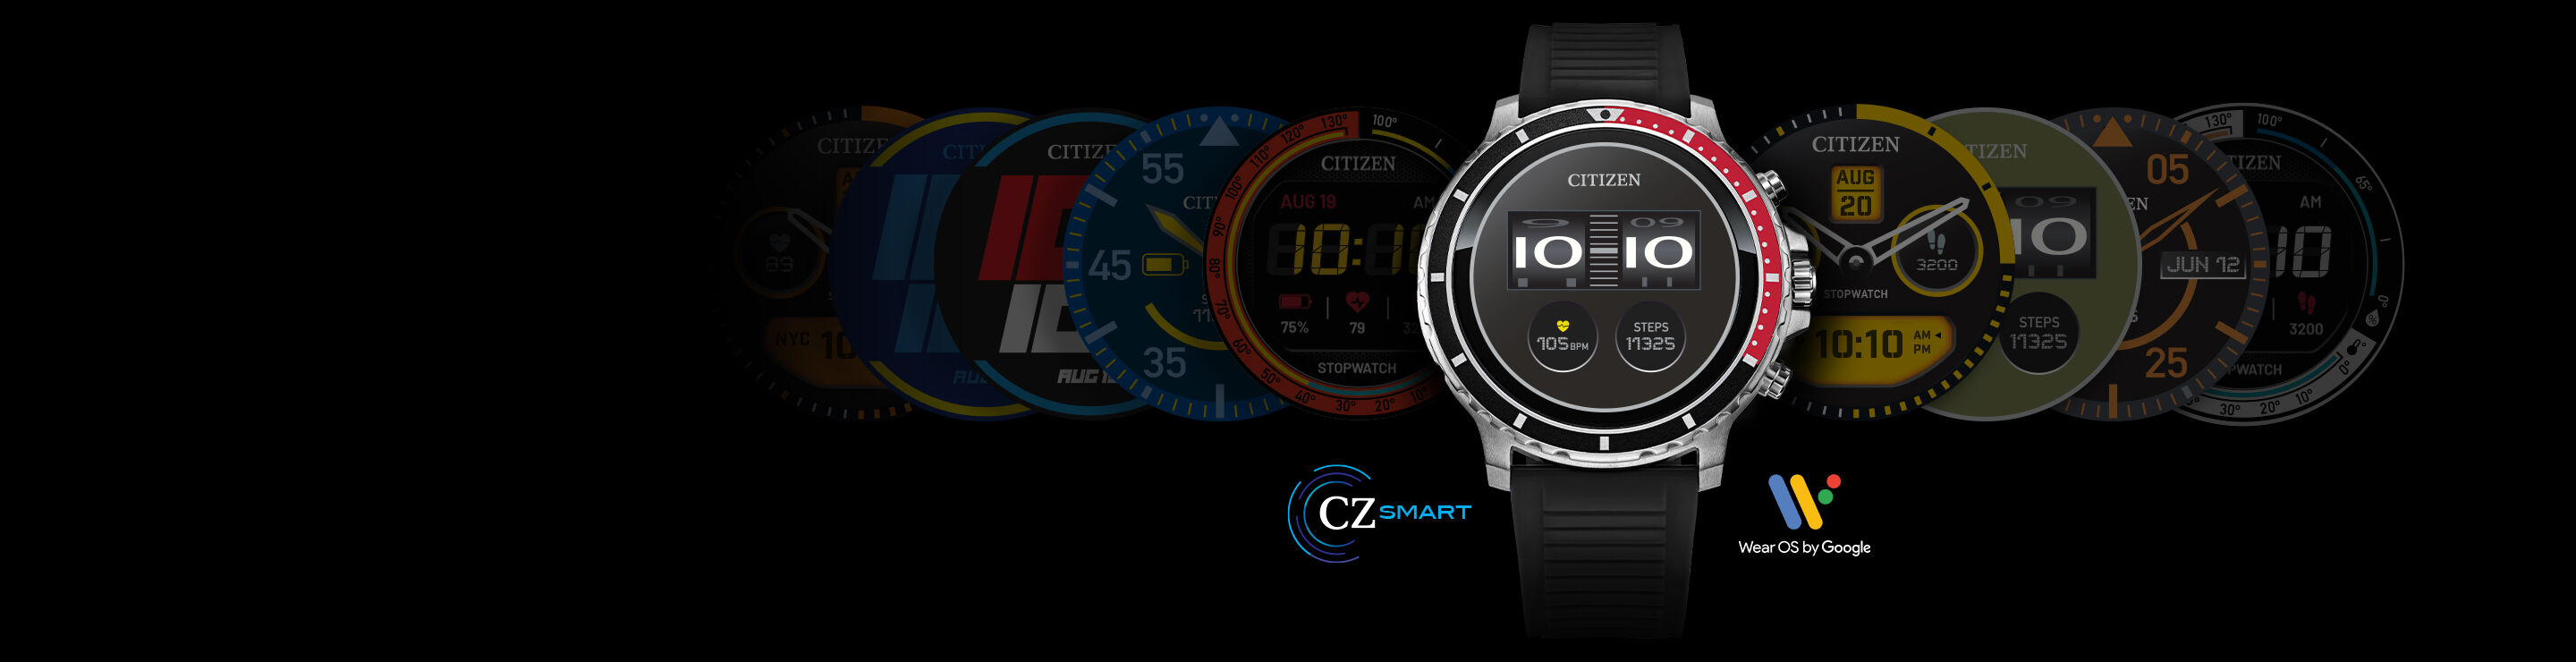 CZ Smart - WearOS Smartwatch | CITIZEN